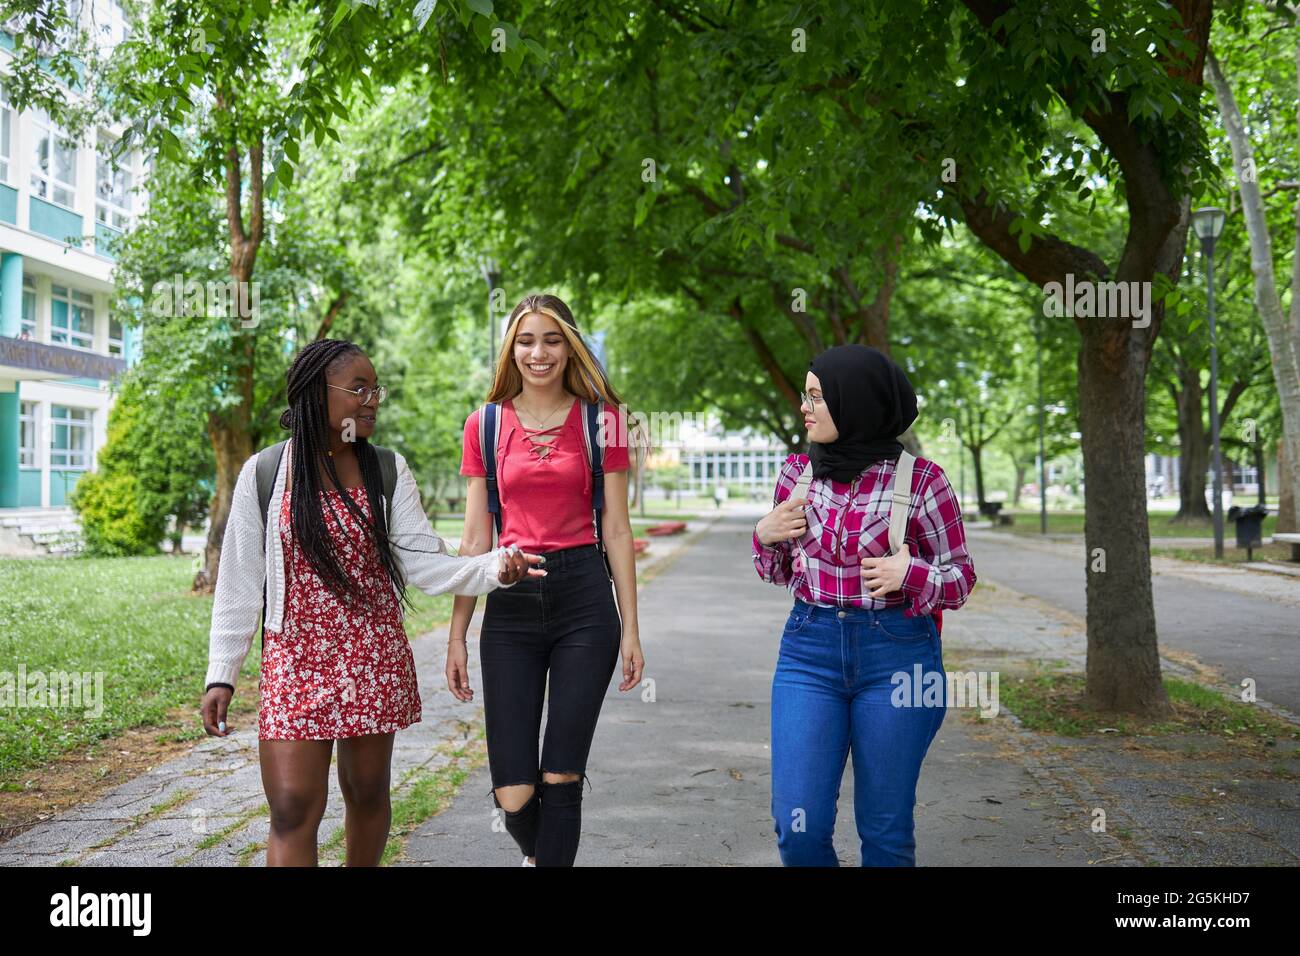 Three college friends walking around campus Stock Photo